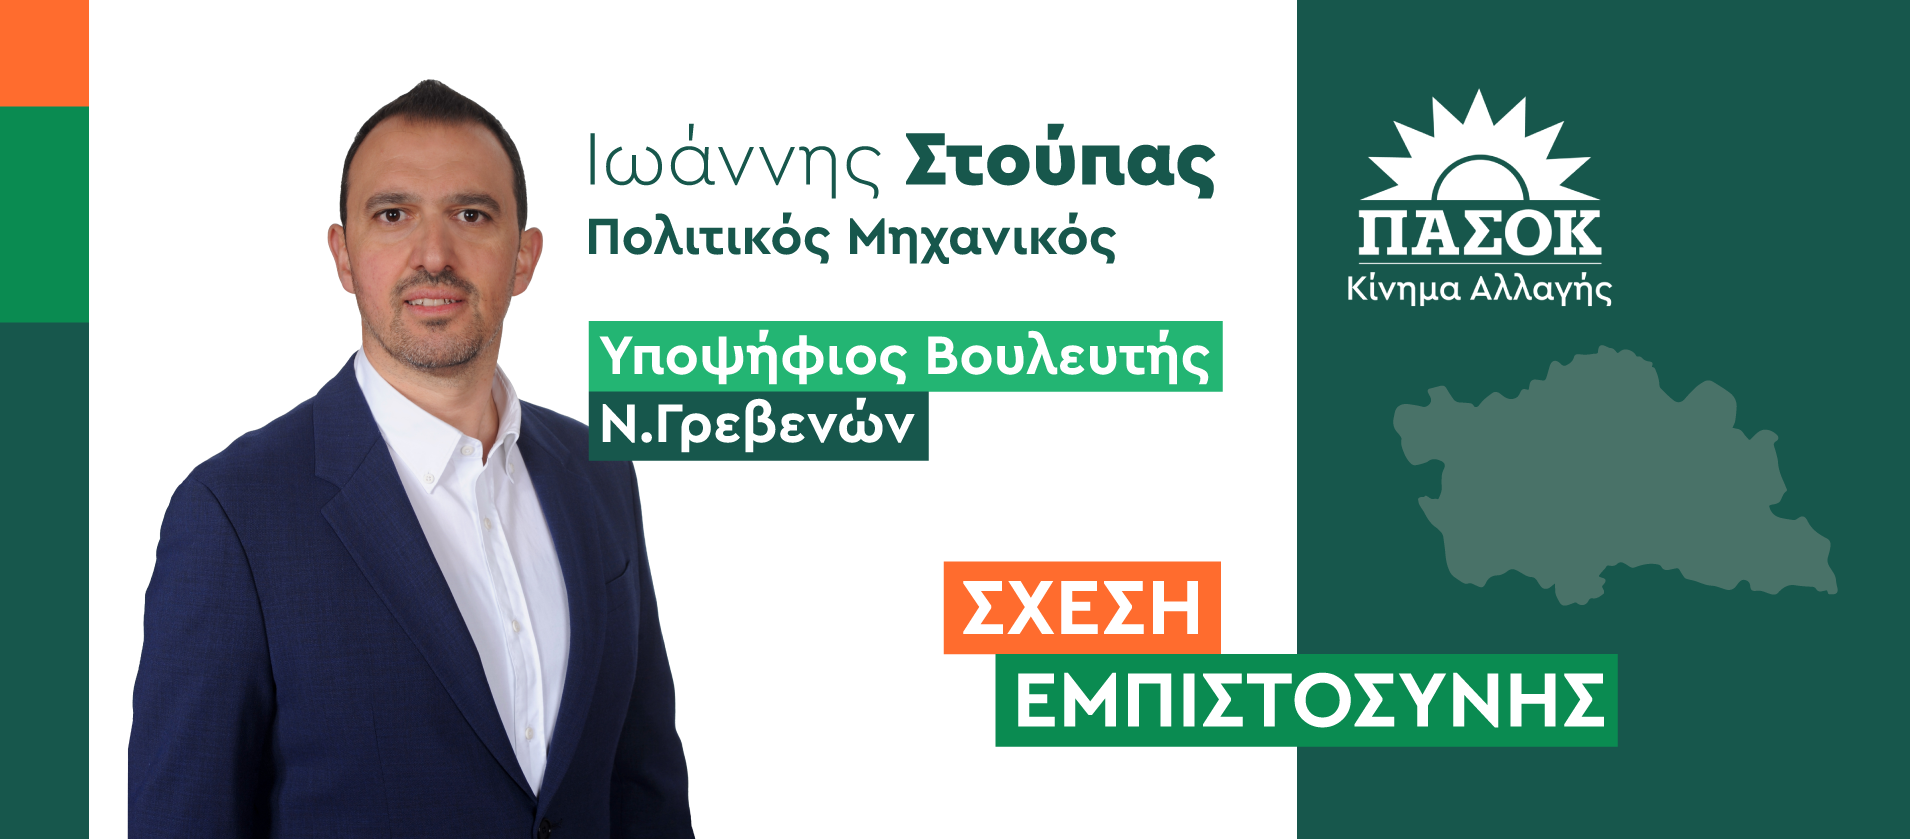 Ιωάννης Στούπας, Υπ. Βουλευτής Ν.Γρεβενών του ΠΑΣΟΚ-ΚΙΝΑΛ: «Ανούσια συνθήματα και καθόλου Γρεβενά στην κομματική εκδήλωση της Νέας Δημοκρατίας»